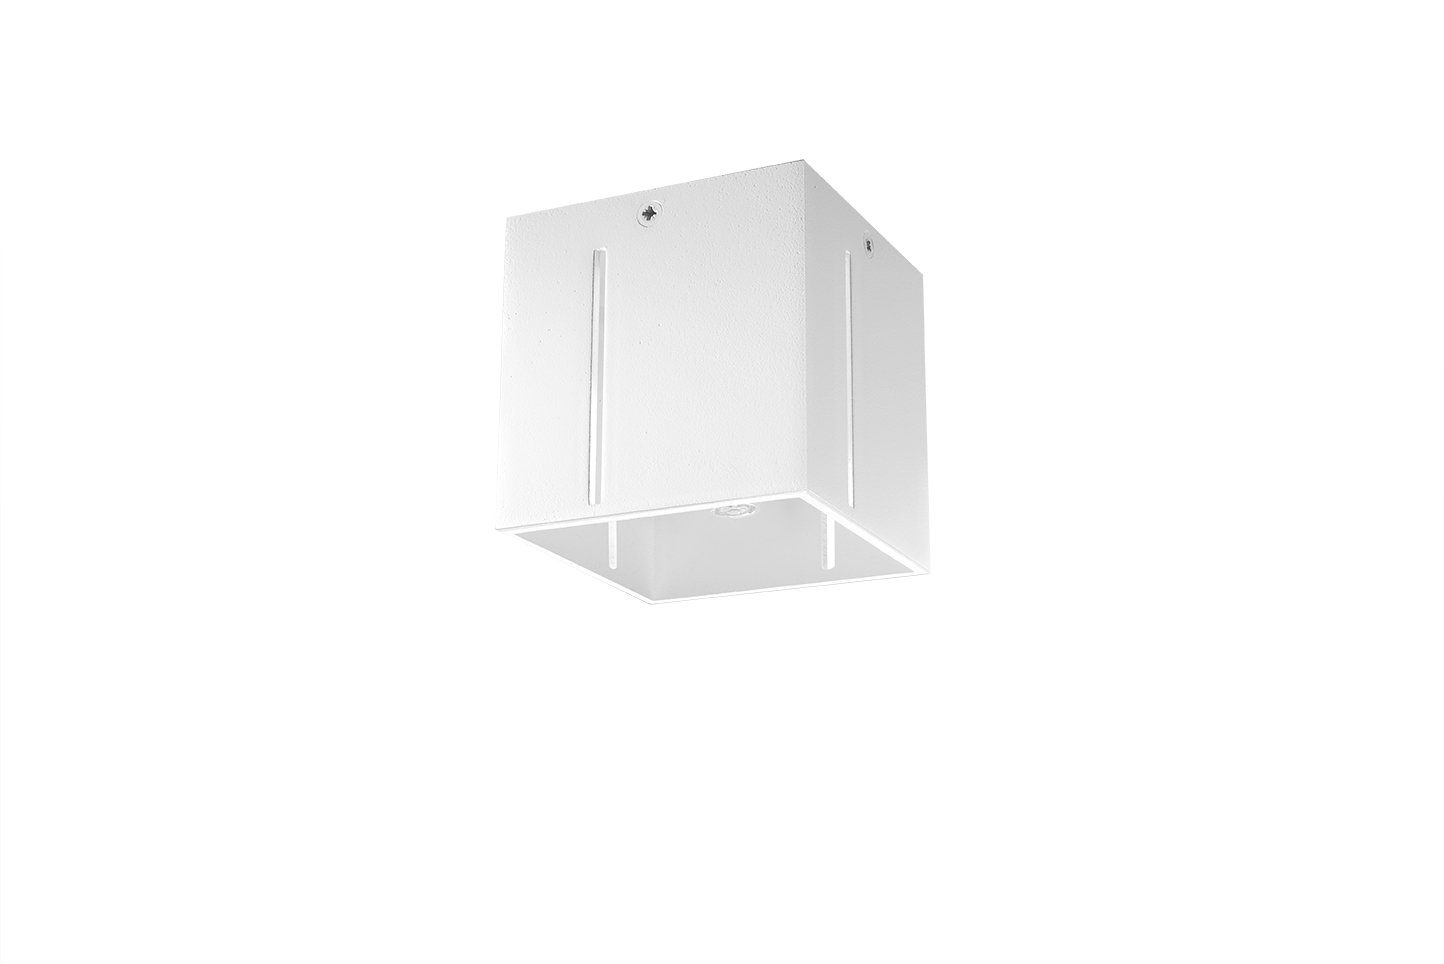 Weiß klein Flur 10x10x10cm LED Aluminium wechselbar, eckig FUFIA, Licht-Erlebnisse Warmweiß, Deckenleuchte Wohnzimmer Deckenlampe G9